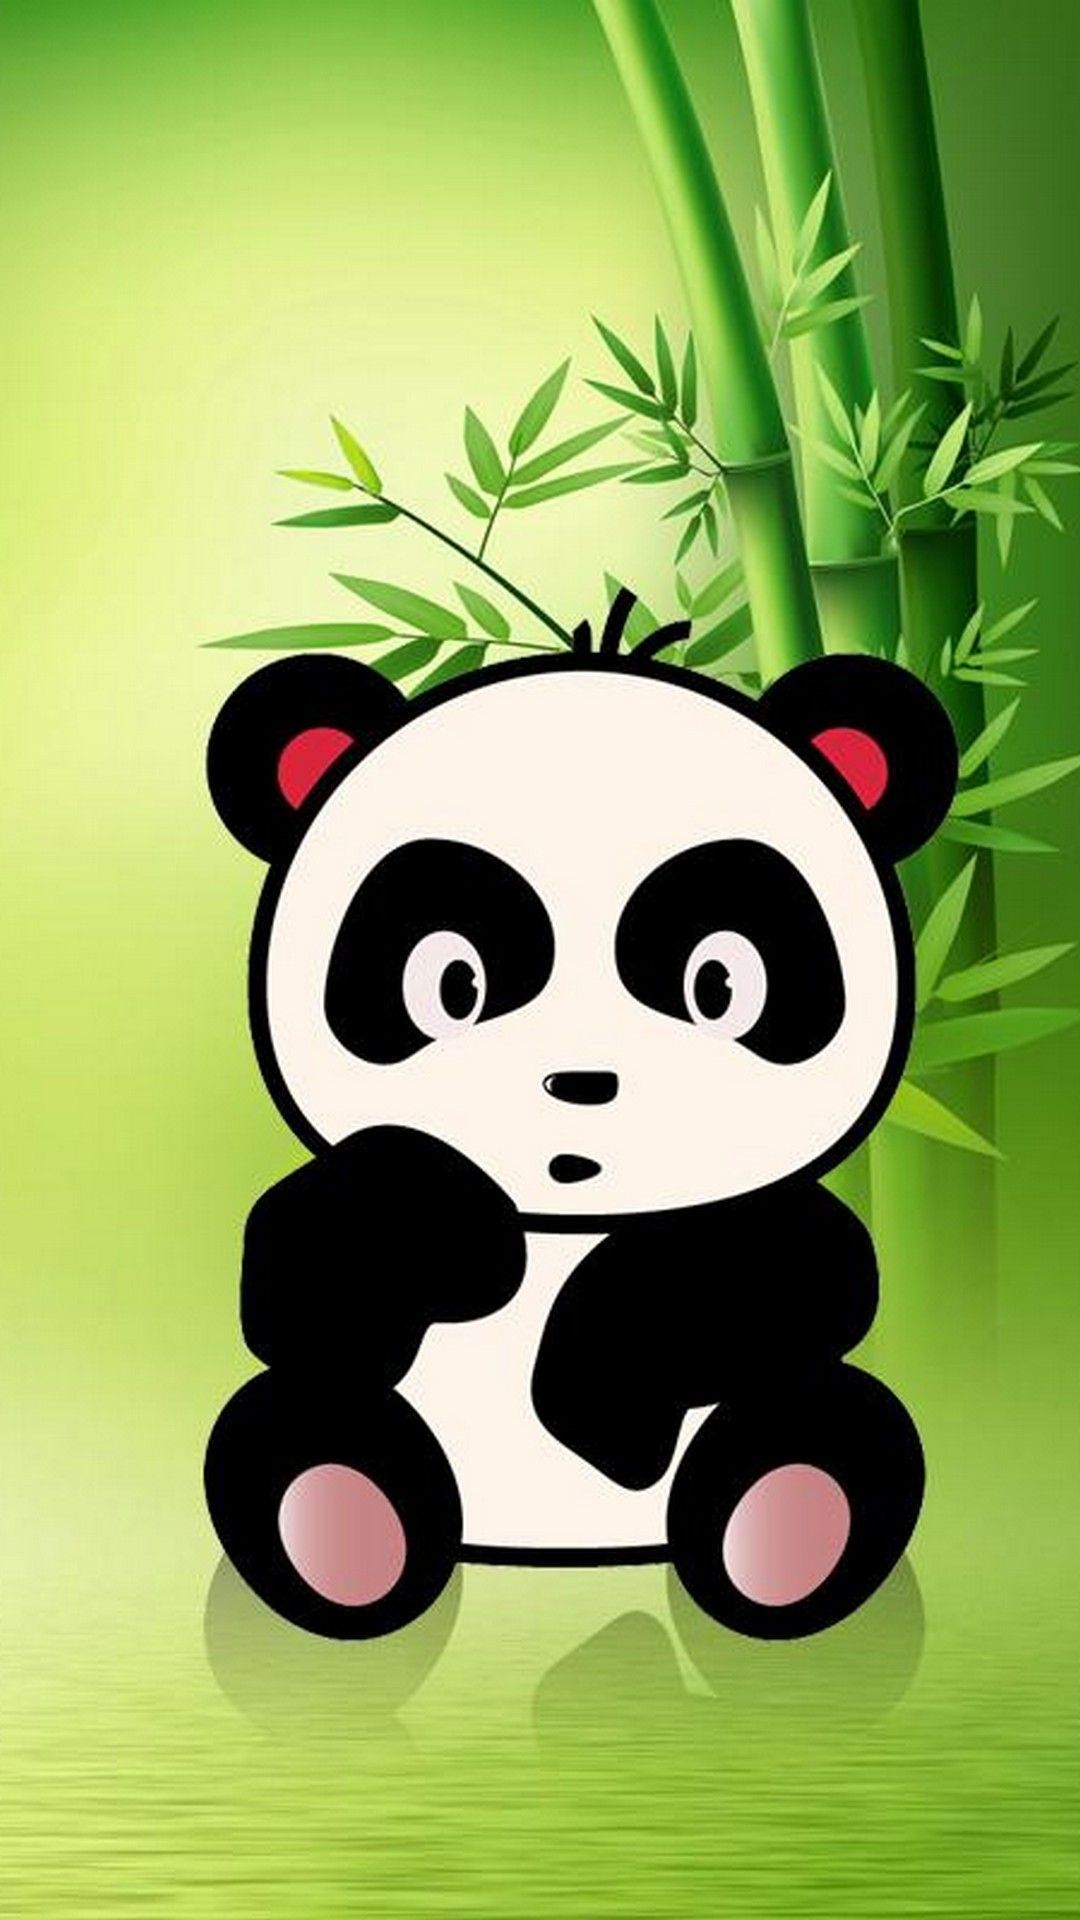 iPhone X Fondo de pantalla de Panda lindo de Animales, Pandas - Todo fondos